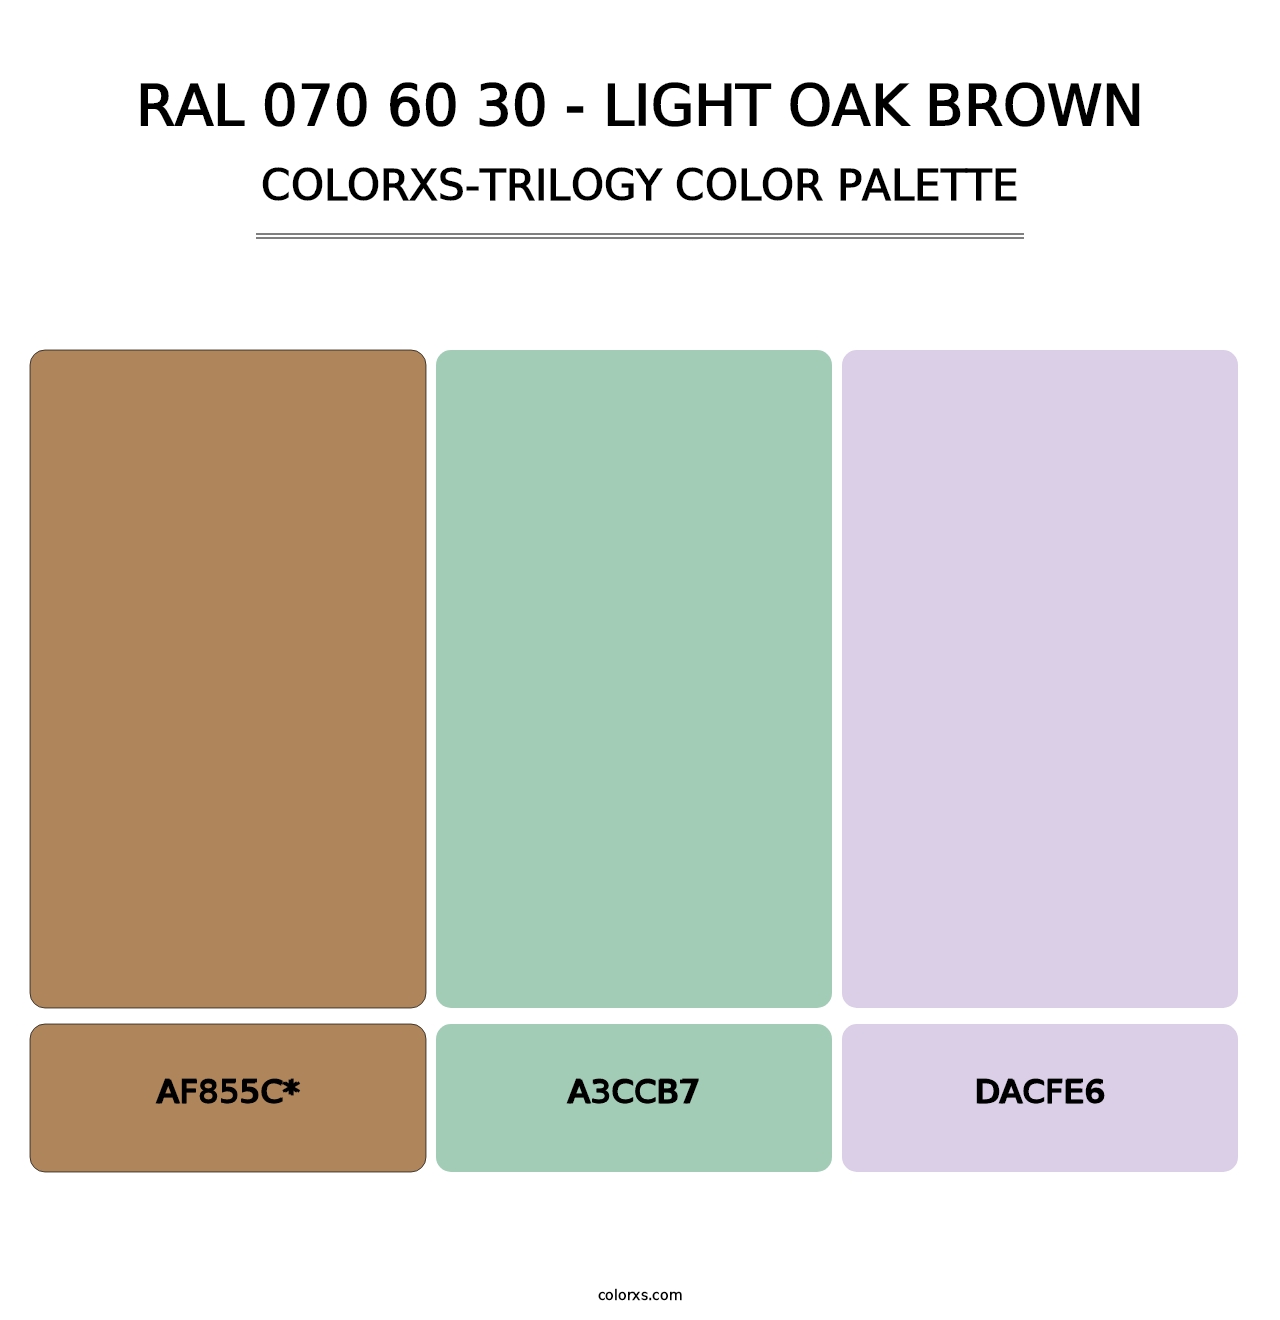 RAL 070 60 30 - Light Oak Brown - Colorxs Trilogy Palette